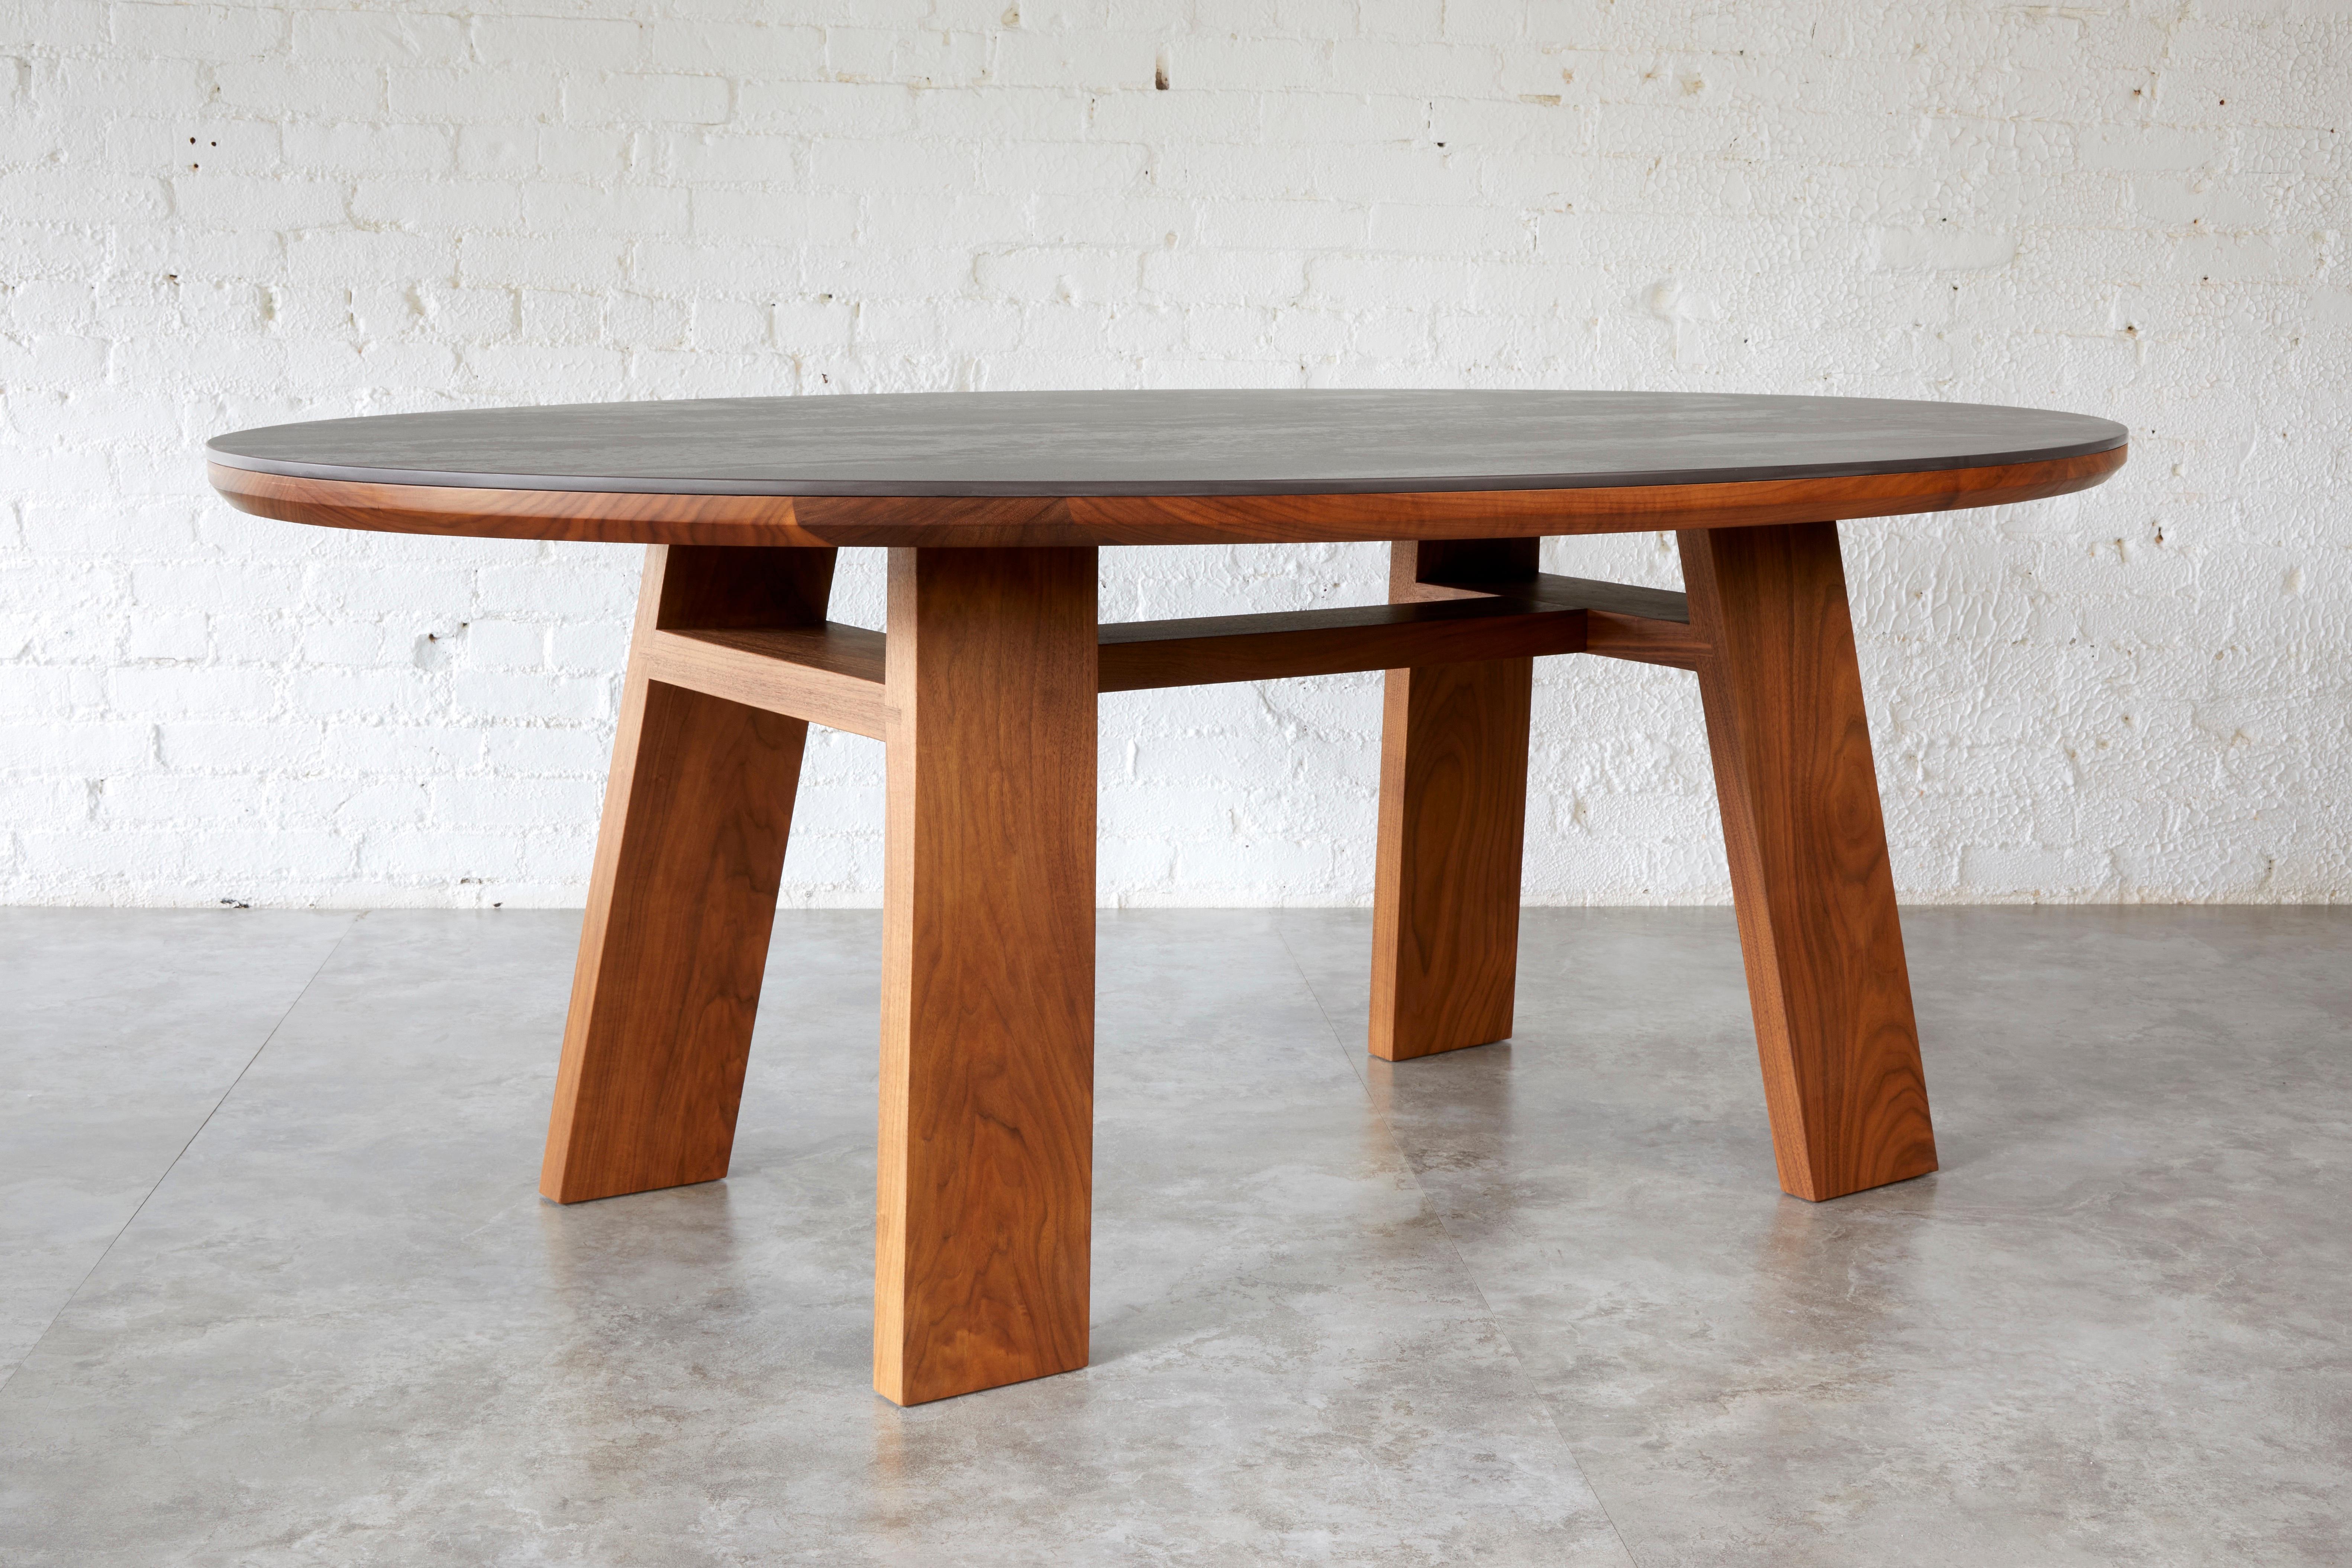 La table Nieves associe des matériaux naturels issus de deux éléments, le bois et la pierre, pour créer une table surélevée qui stimule les sens. En commençant par du bois massif provenant d'une source aussi proche que possible, notre designer Kirk